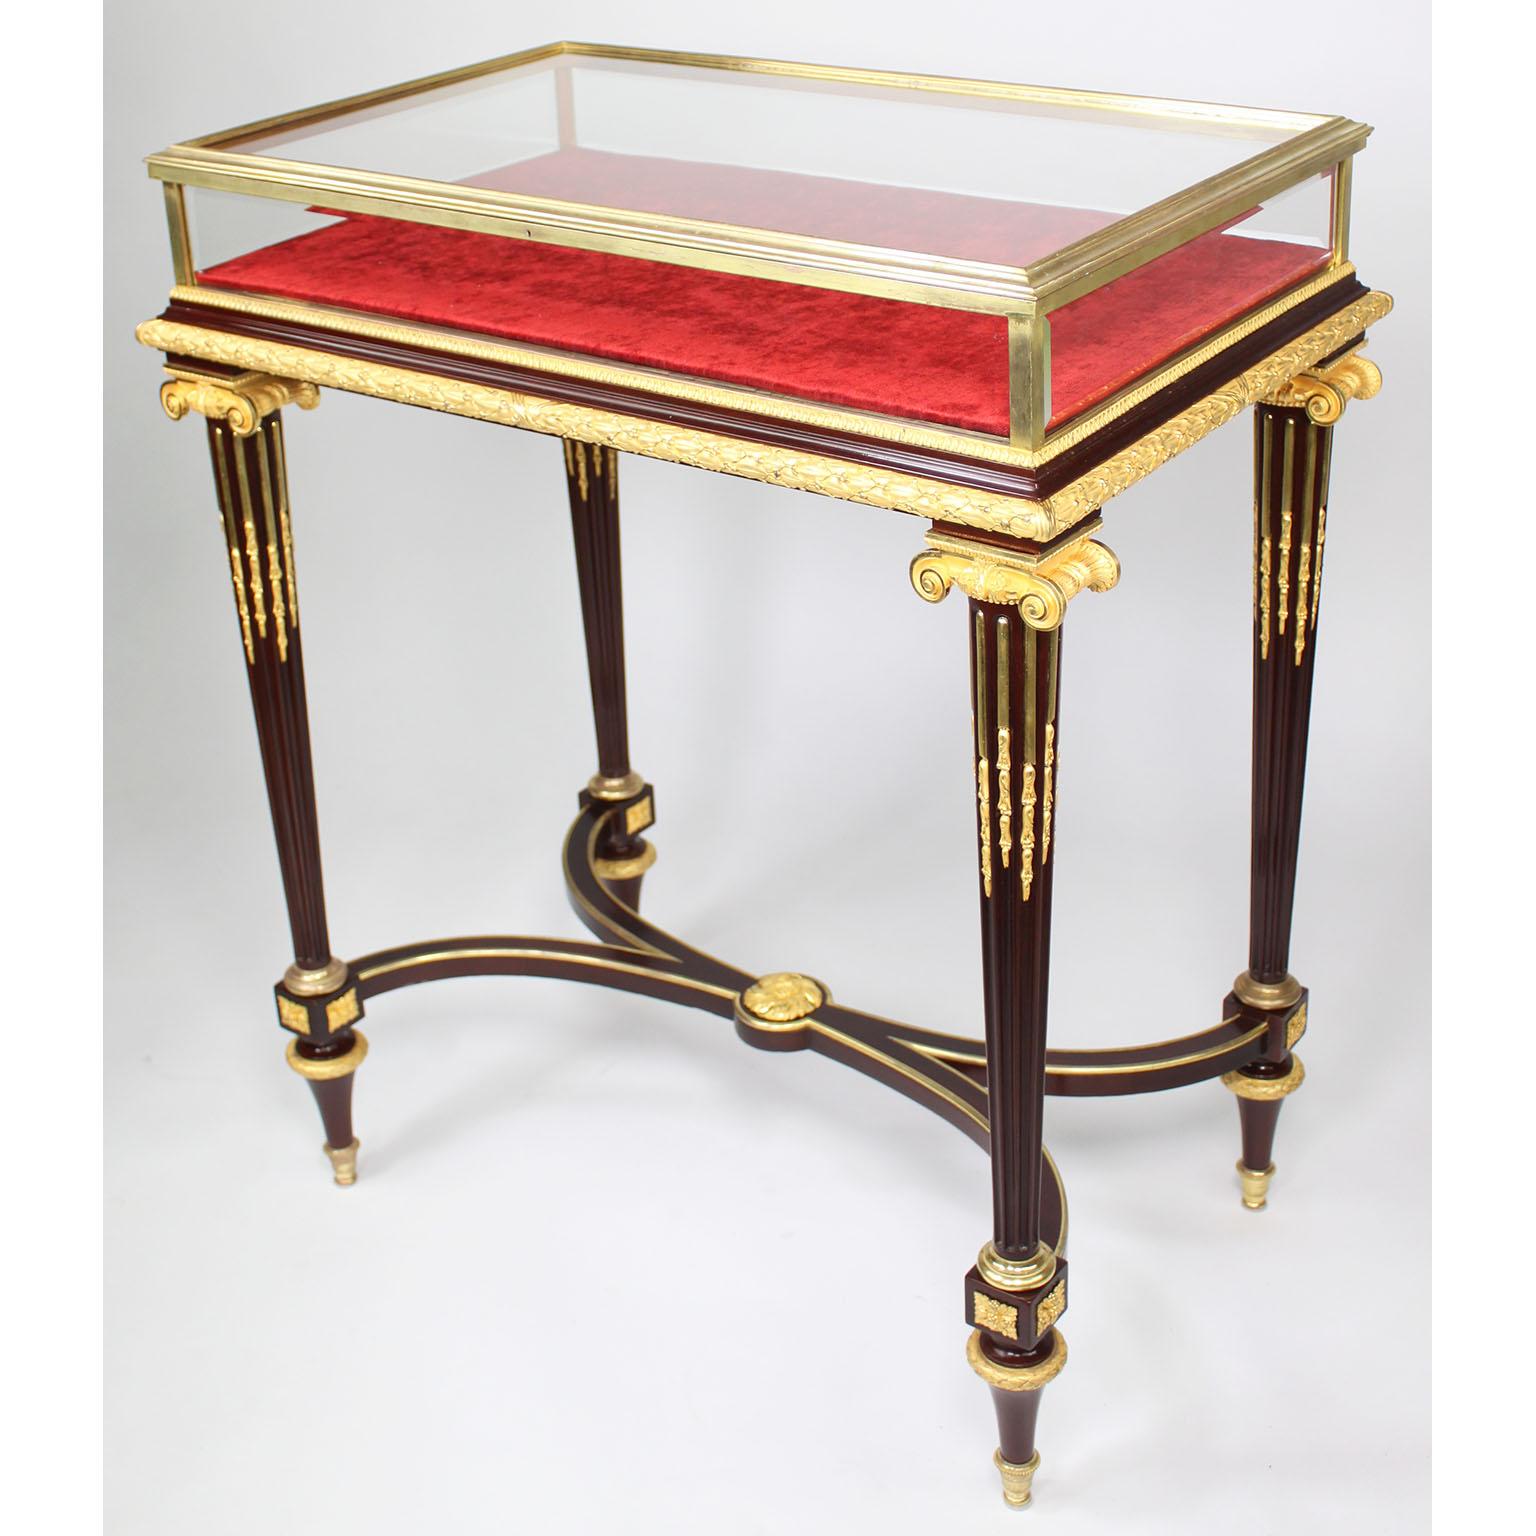 Ein sehr feines Museum Qualität Französisch 19. Jahrhundert Louis XVI-Stil Mahagoni und Gold-Bronze Ormolu montiert Bijouterie (Schmuck) Vitrinentisch von Henri Dasson, mit einem verglasten, Scharnier oben und abgeschrägten Glasseiten in einem